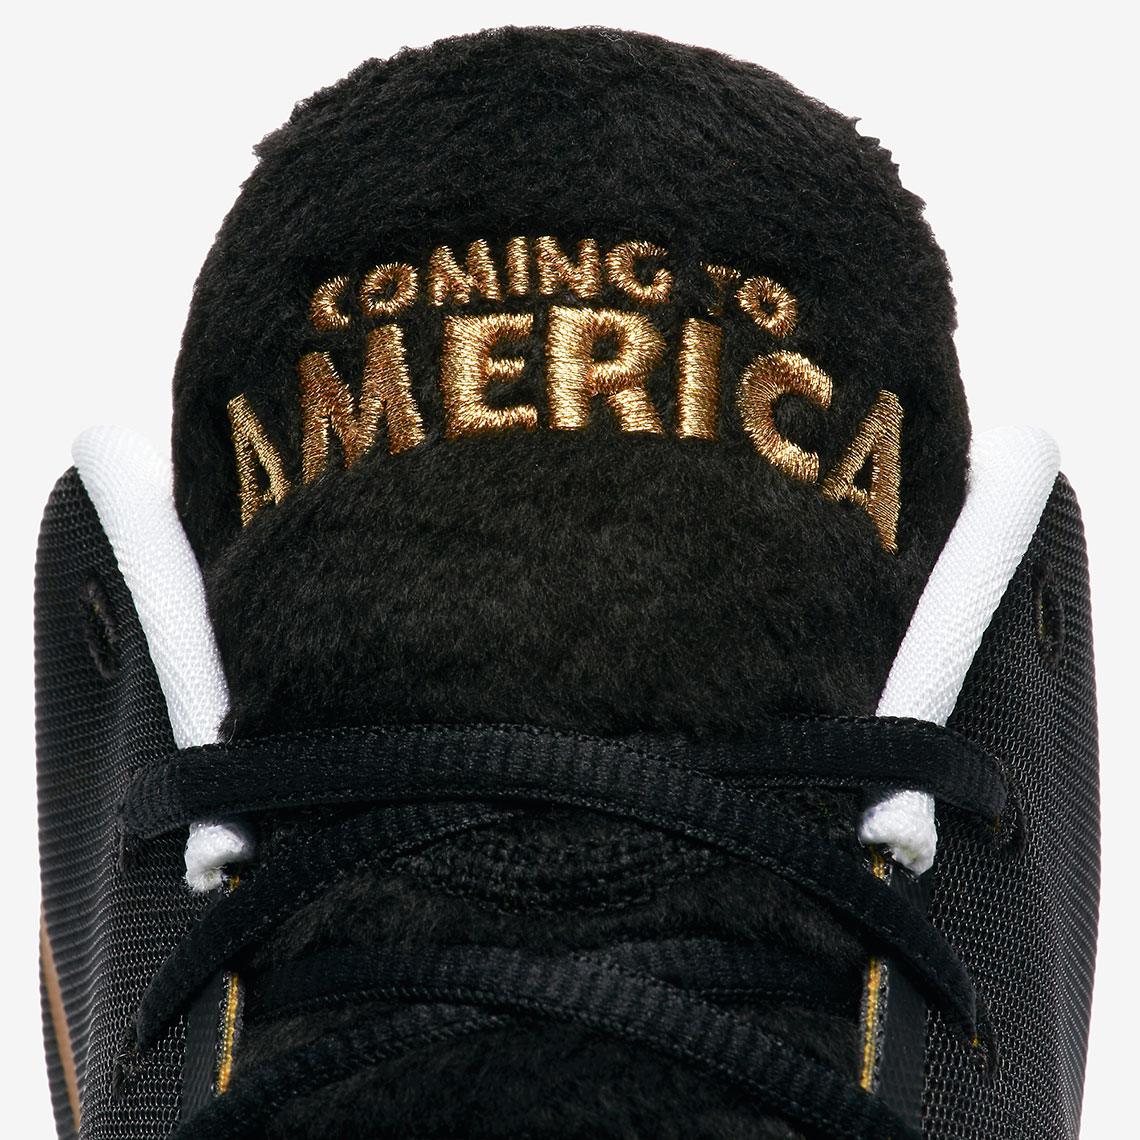 Nike Zoom Freak 1 Coming To America Bq5422 900 3